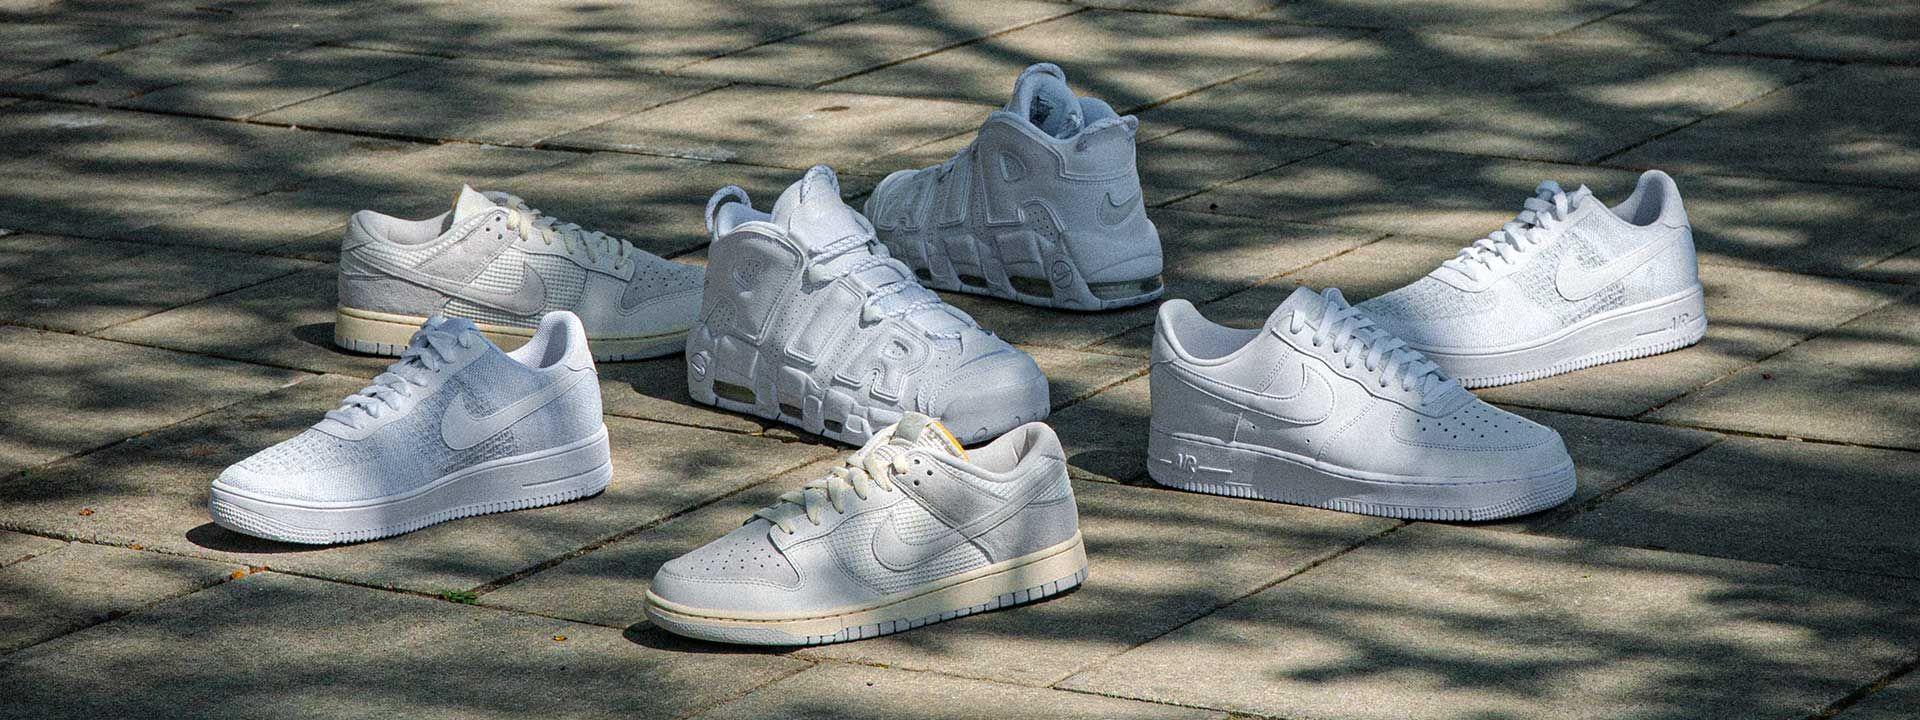 Air Jordan Nike die besten Schuhe zum Tragen